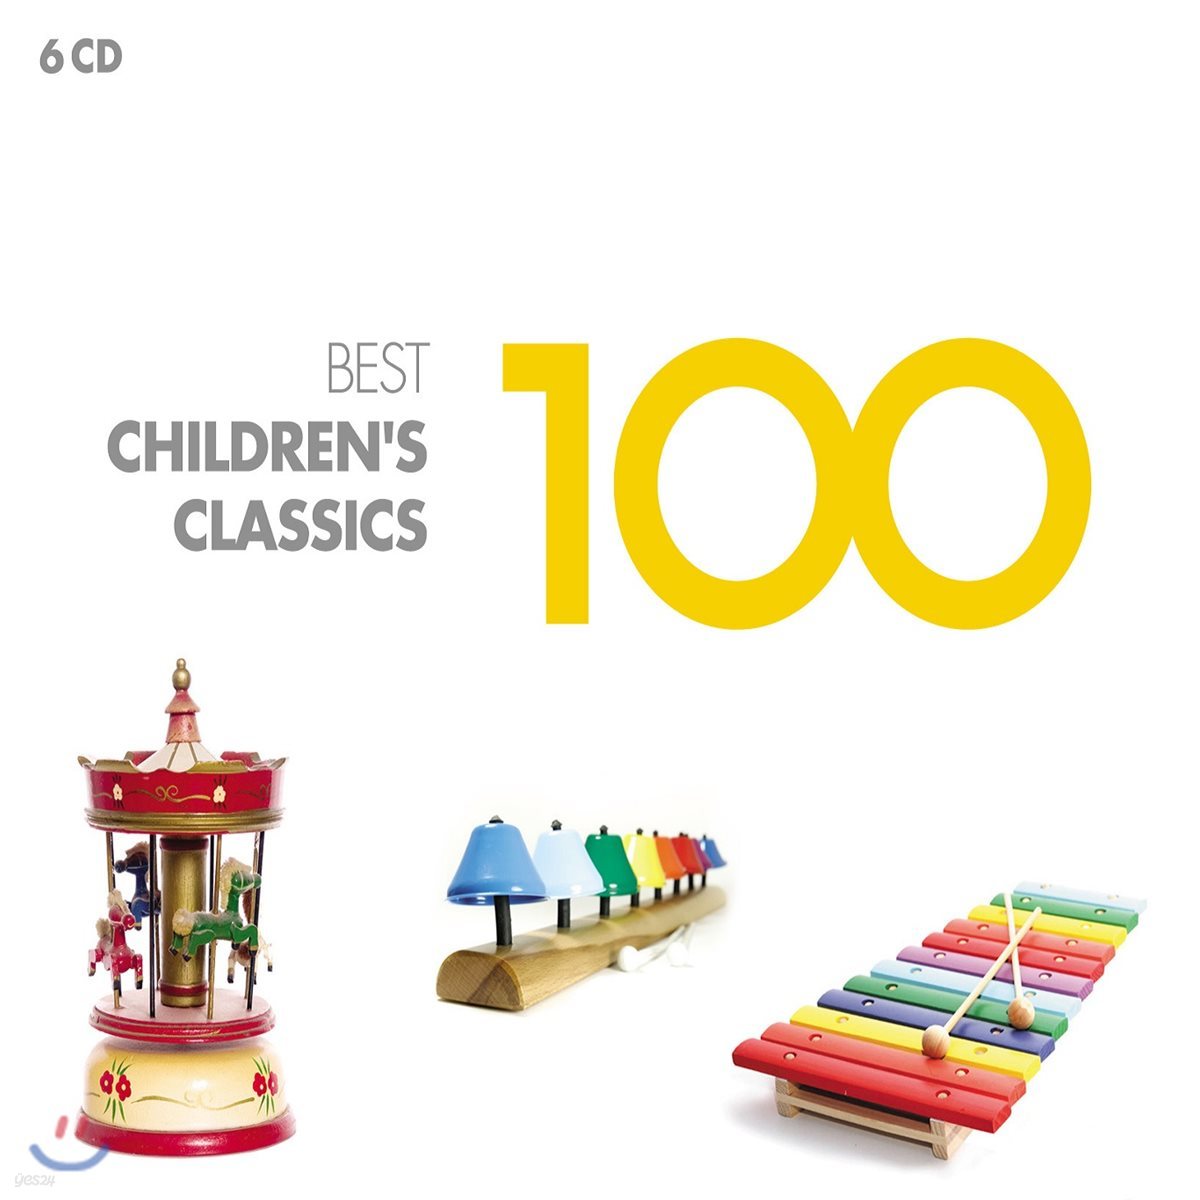 어린이 클래식 베스트 100 (100 Best Children's Classics)